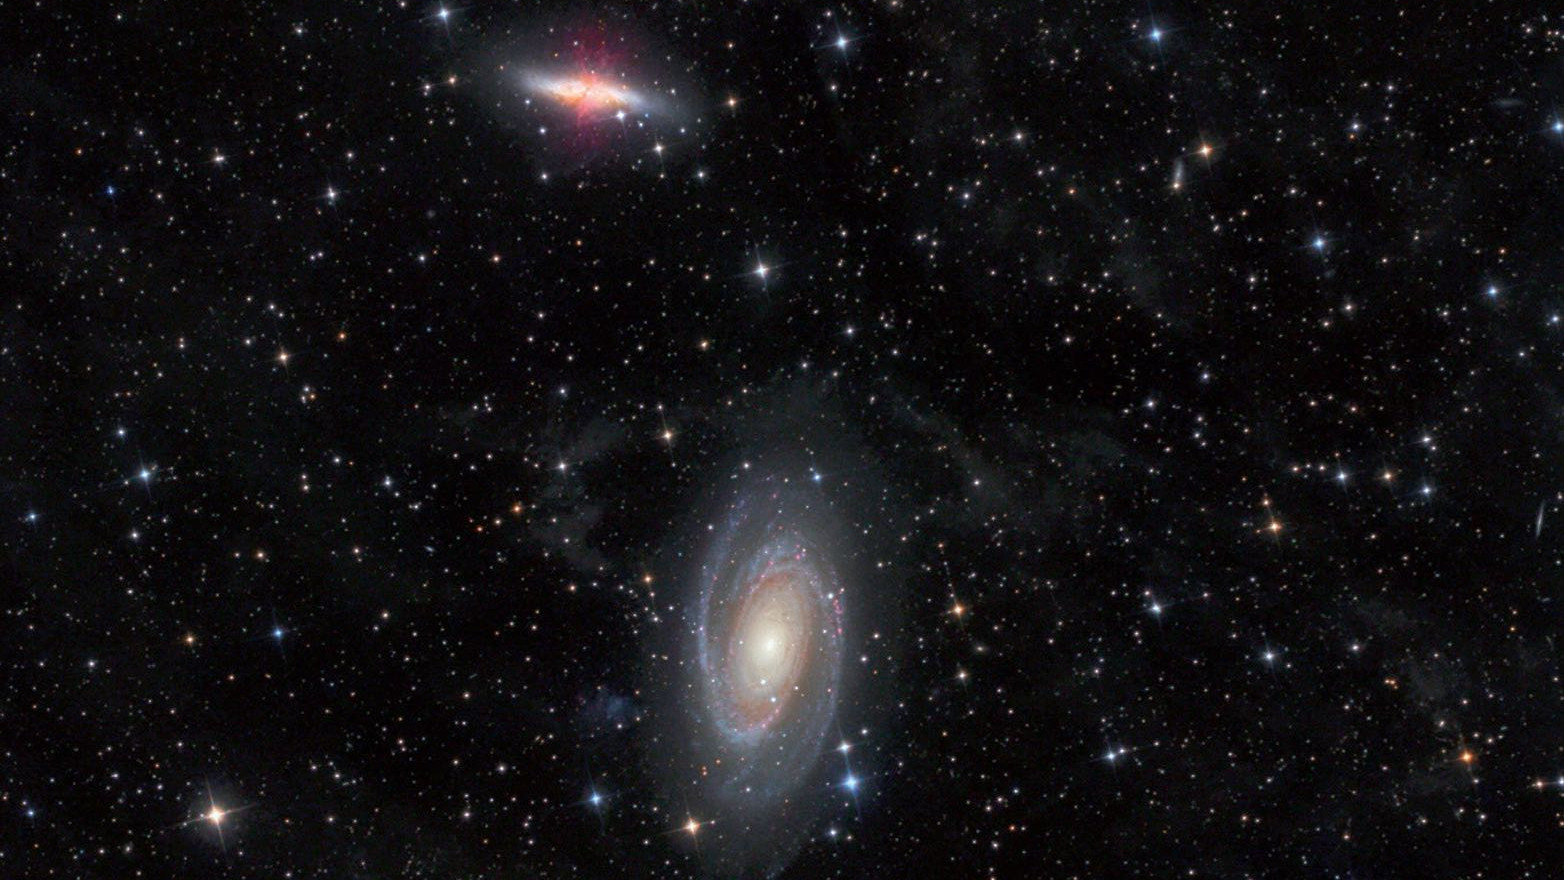 Zdjęcie galaktyk M81 i M82 w gwiazdozbiorze Wielkiej Niedźwiedzicy wykonane za pomocą 4,5-calowego teleskopu Newtona przy ogniskowej 440mm. Michael Deger / CCD Guide